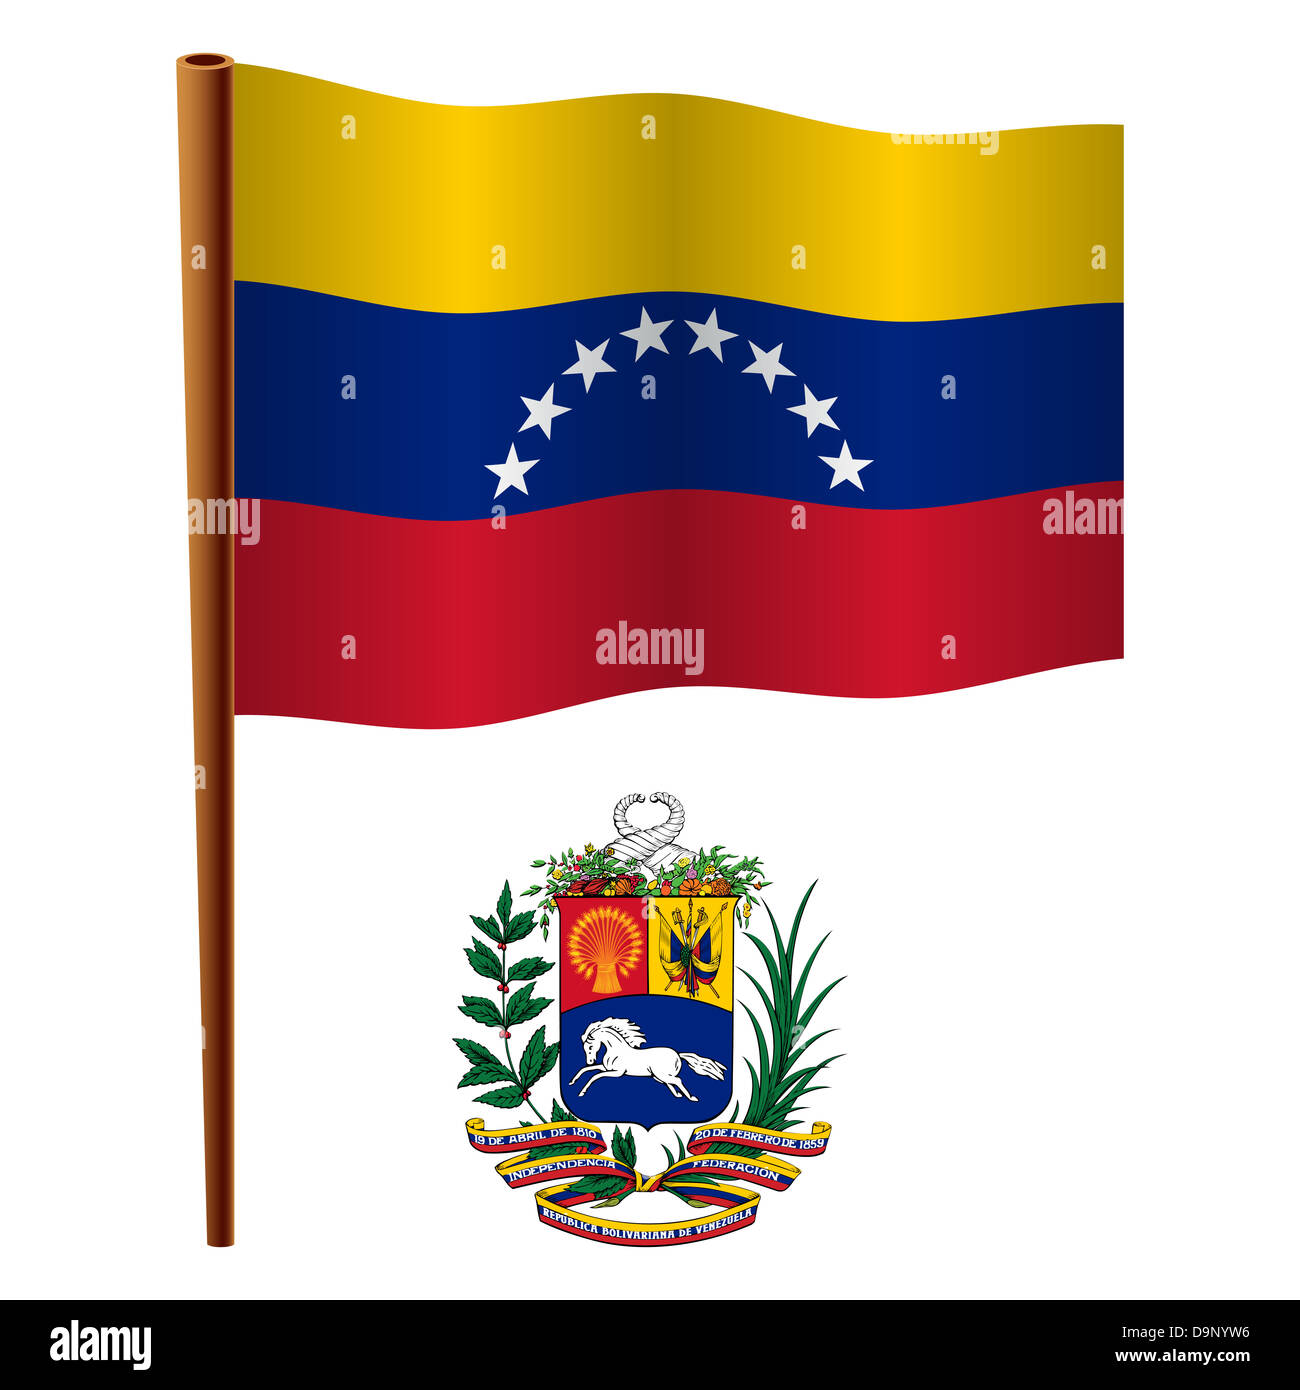 Escudo De Venezuela Imágenes Recortadas De Stock Alamy